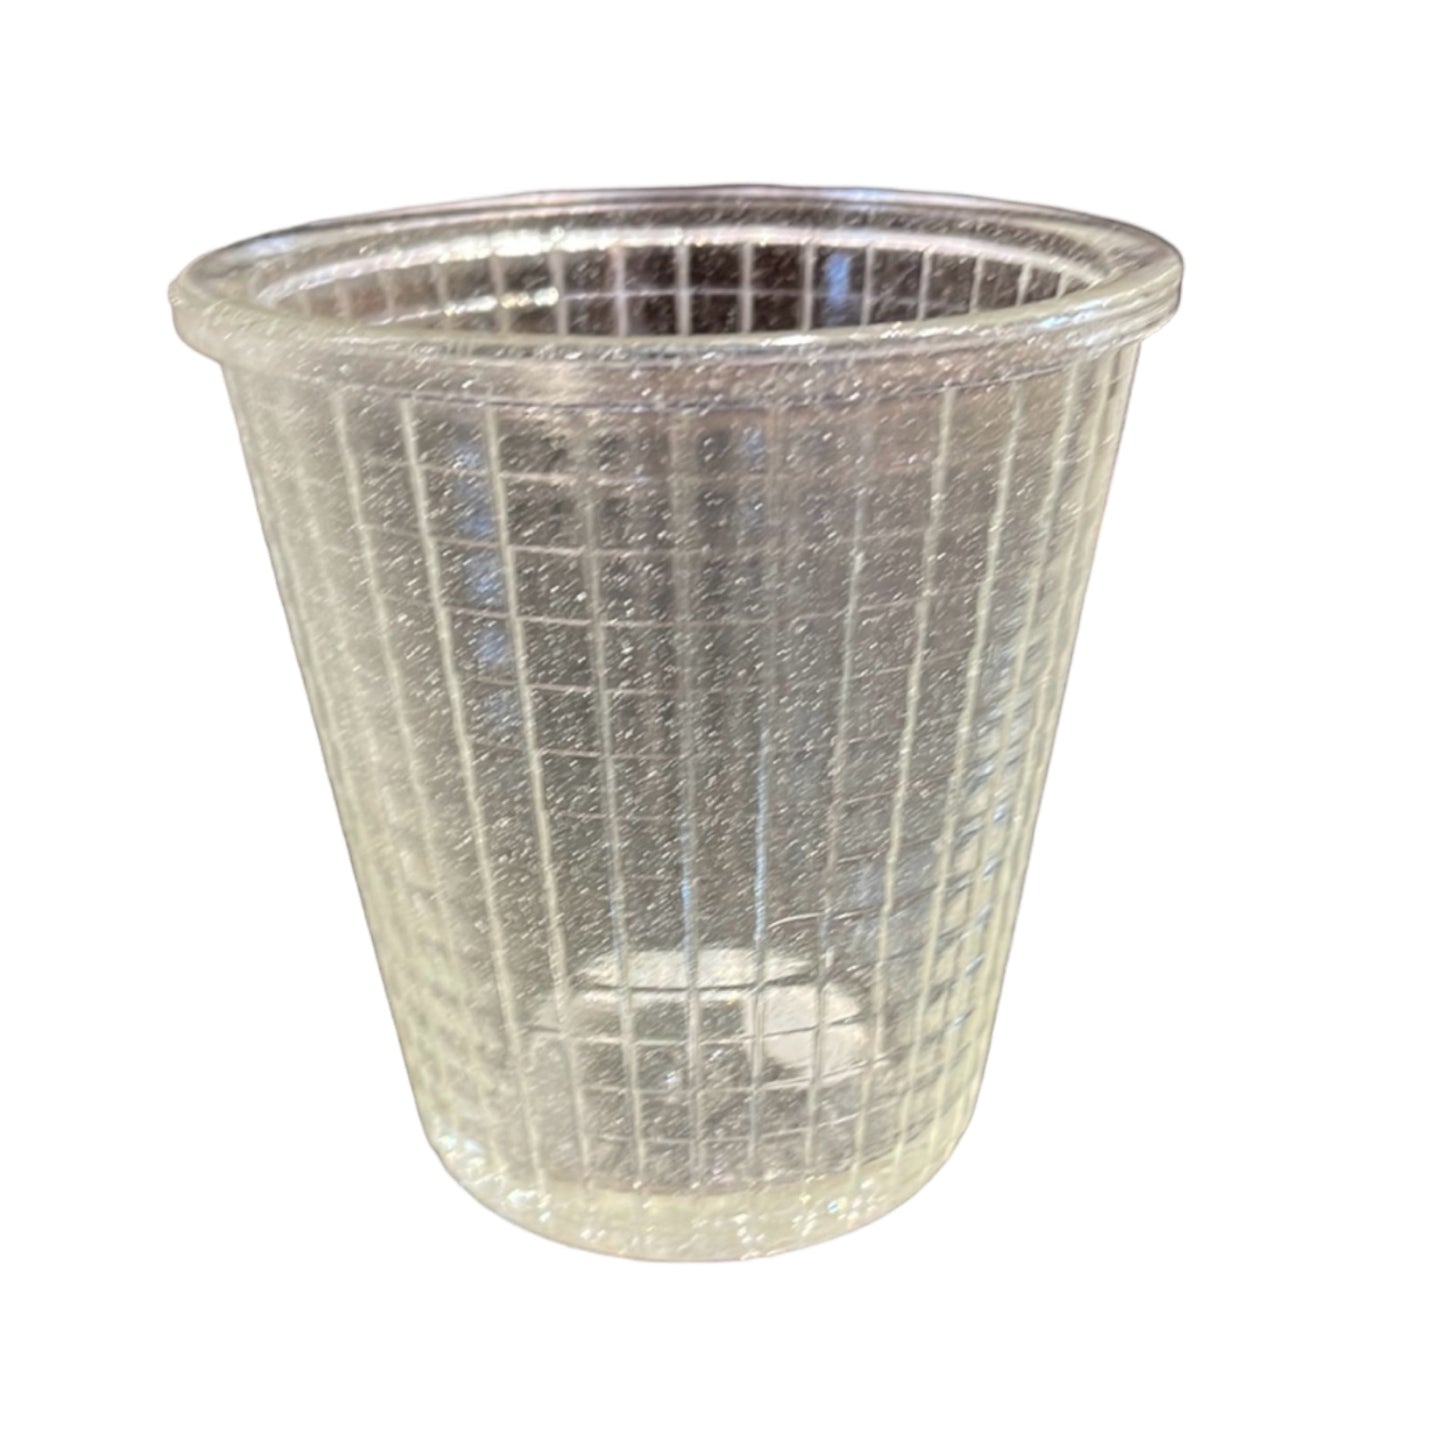 English Glass Jam Jar Circa 1880 - Small